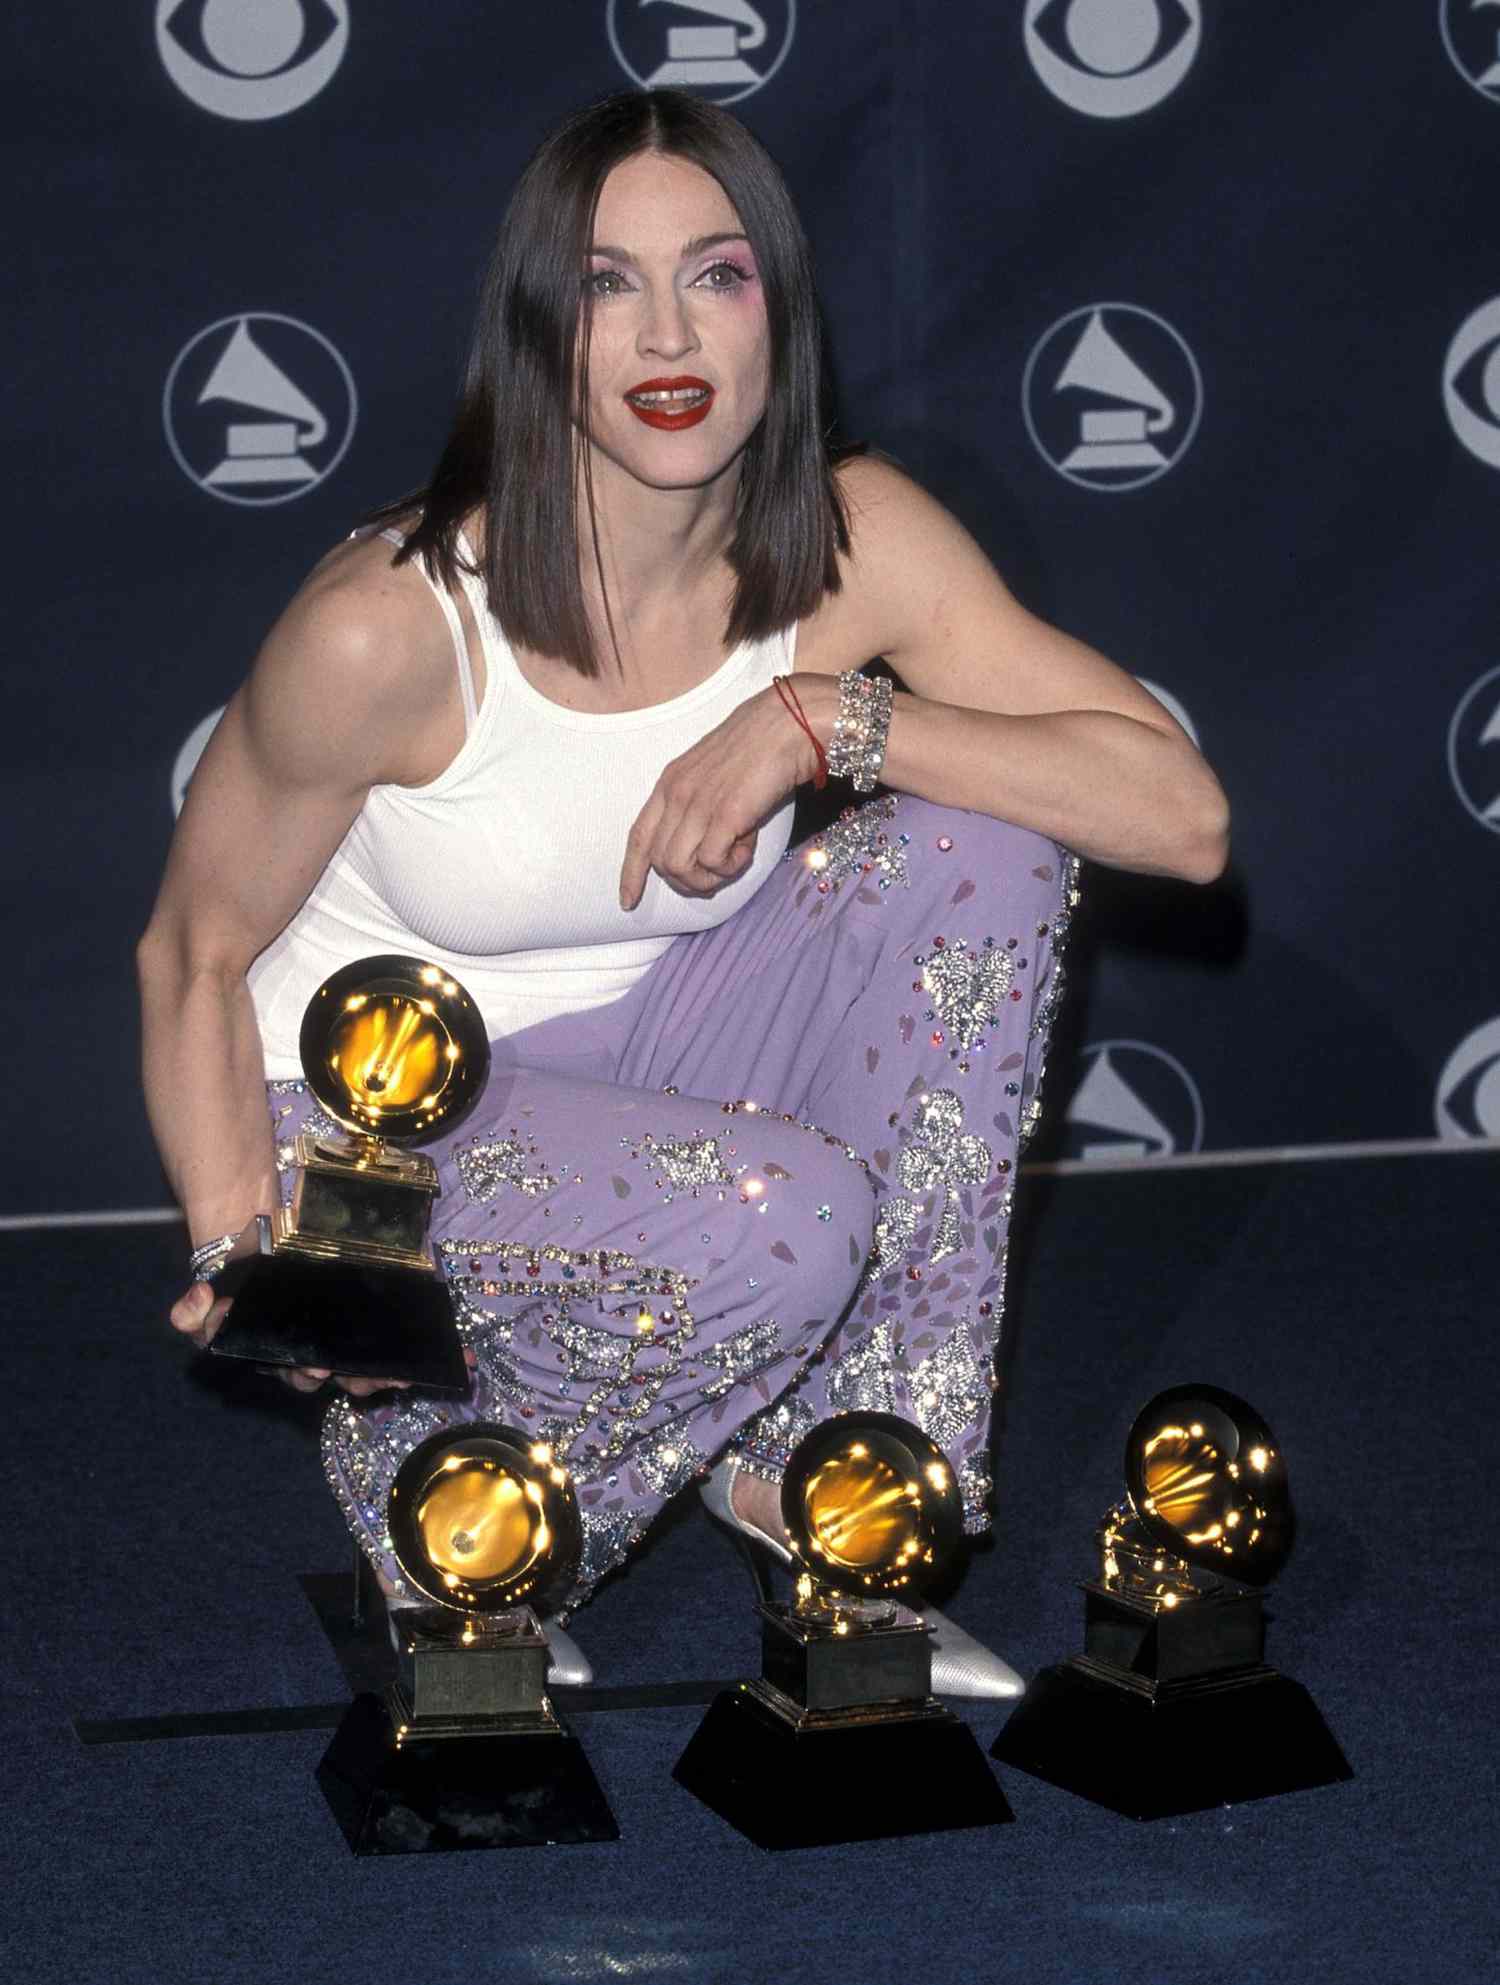 <p>Edición número 41 de los premios Grammy. Shrine Auditorium de Los Angeles, CA. Madonna presume sus cuatro gramófonos dorados luciendo  un estilo con aires de geisha y sus cada vez más pronunciados músculos.</p>
                            